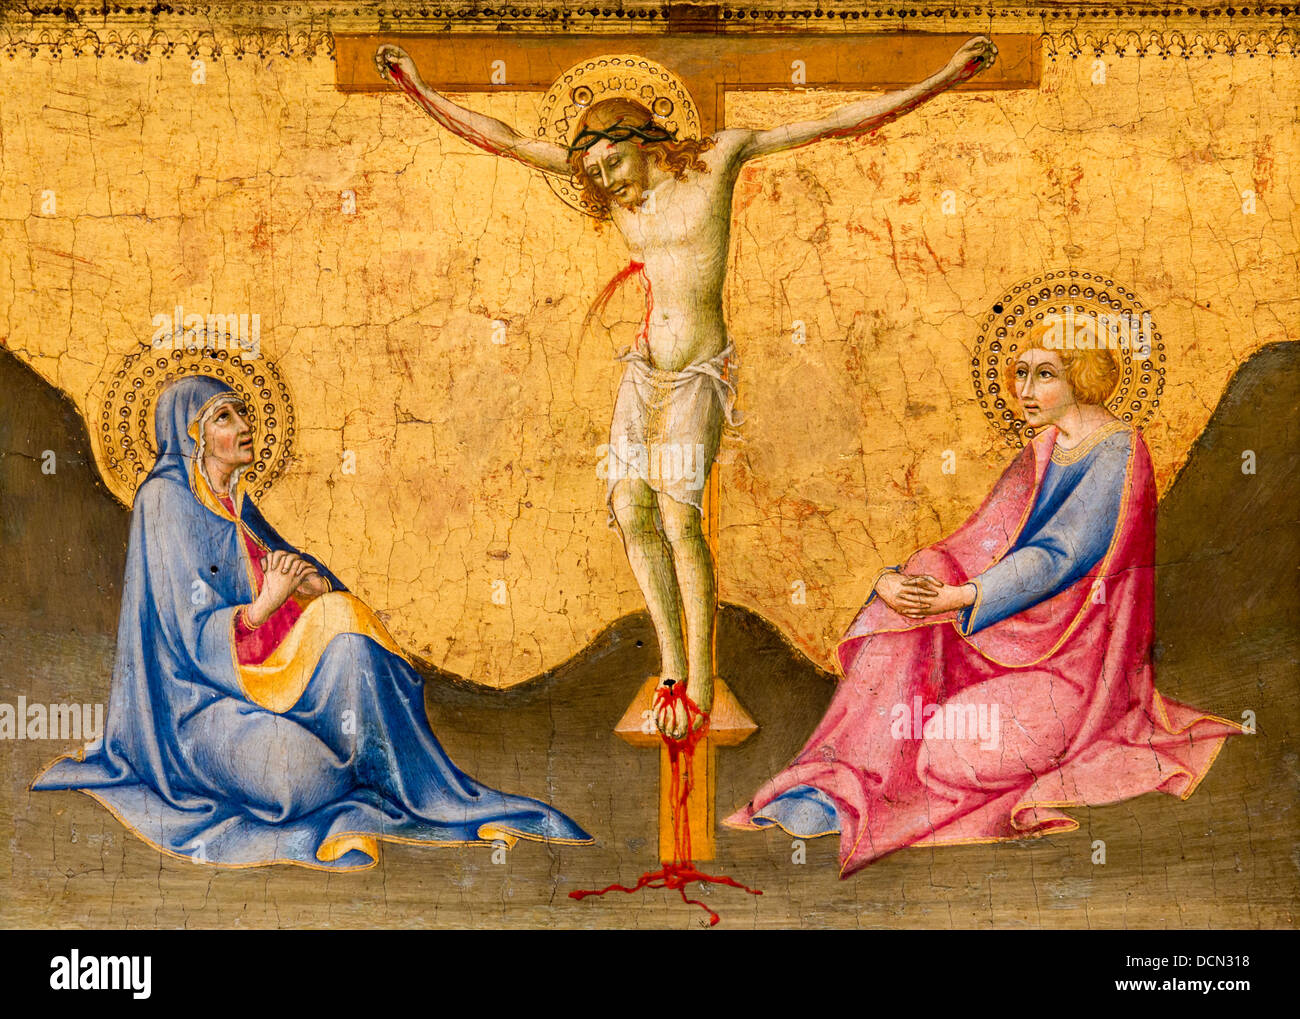 15th century  -  Crucifixion - Sano di Pietro Philippe Sauvan-Magnet / Active Museum Stock Photo